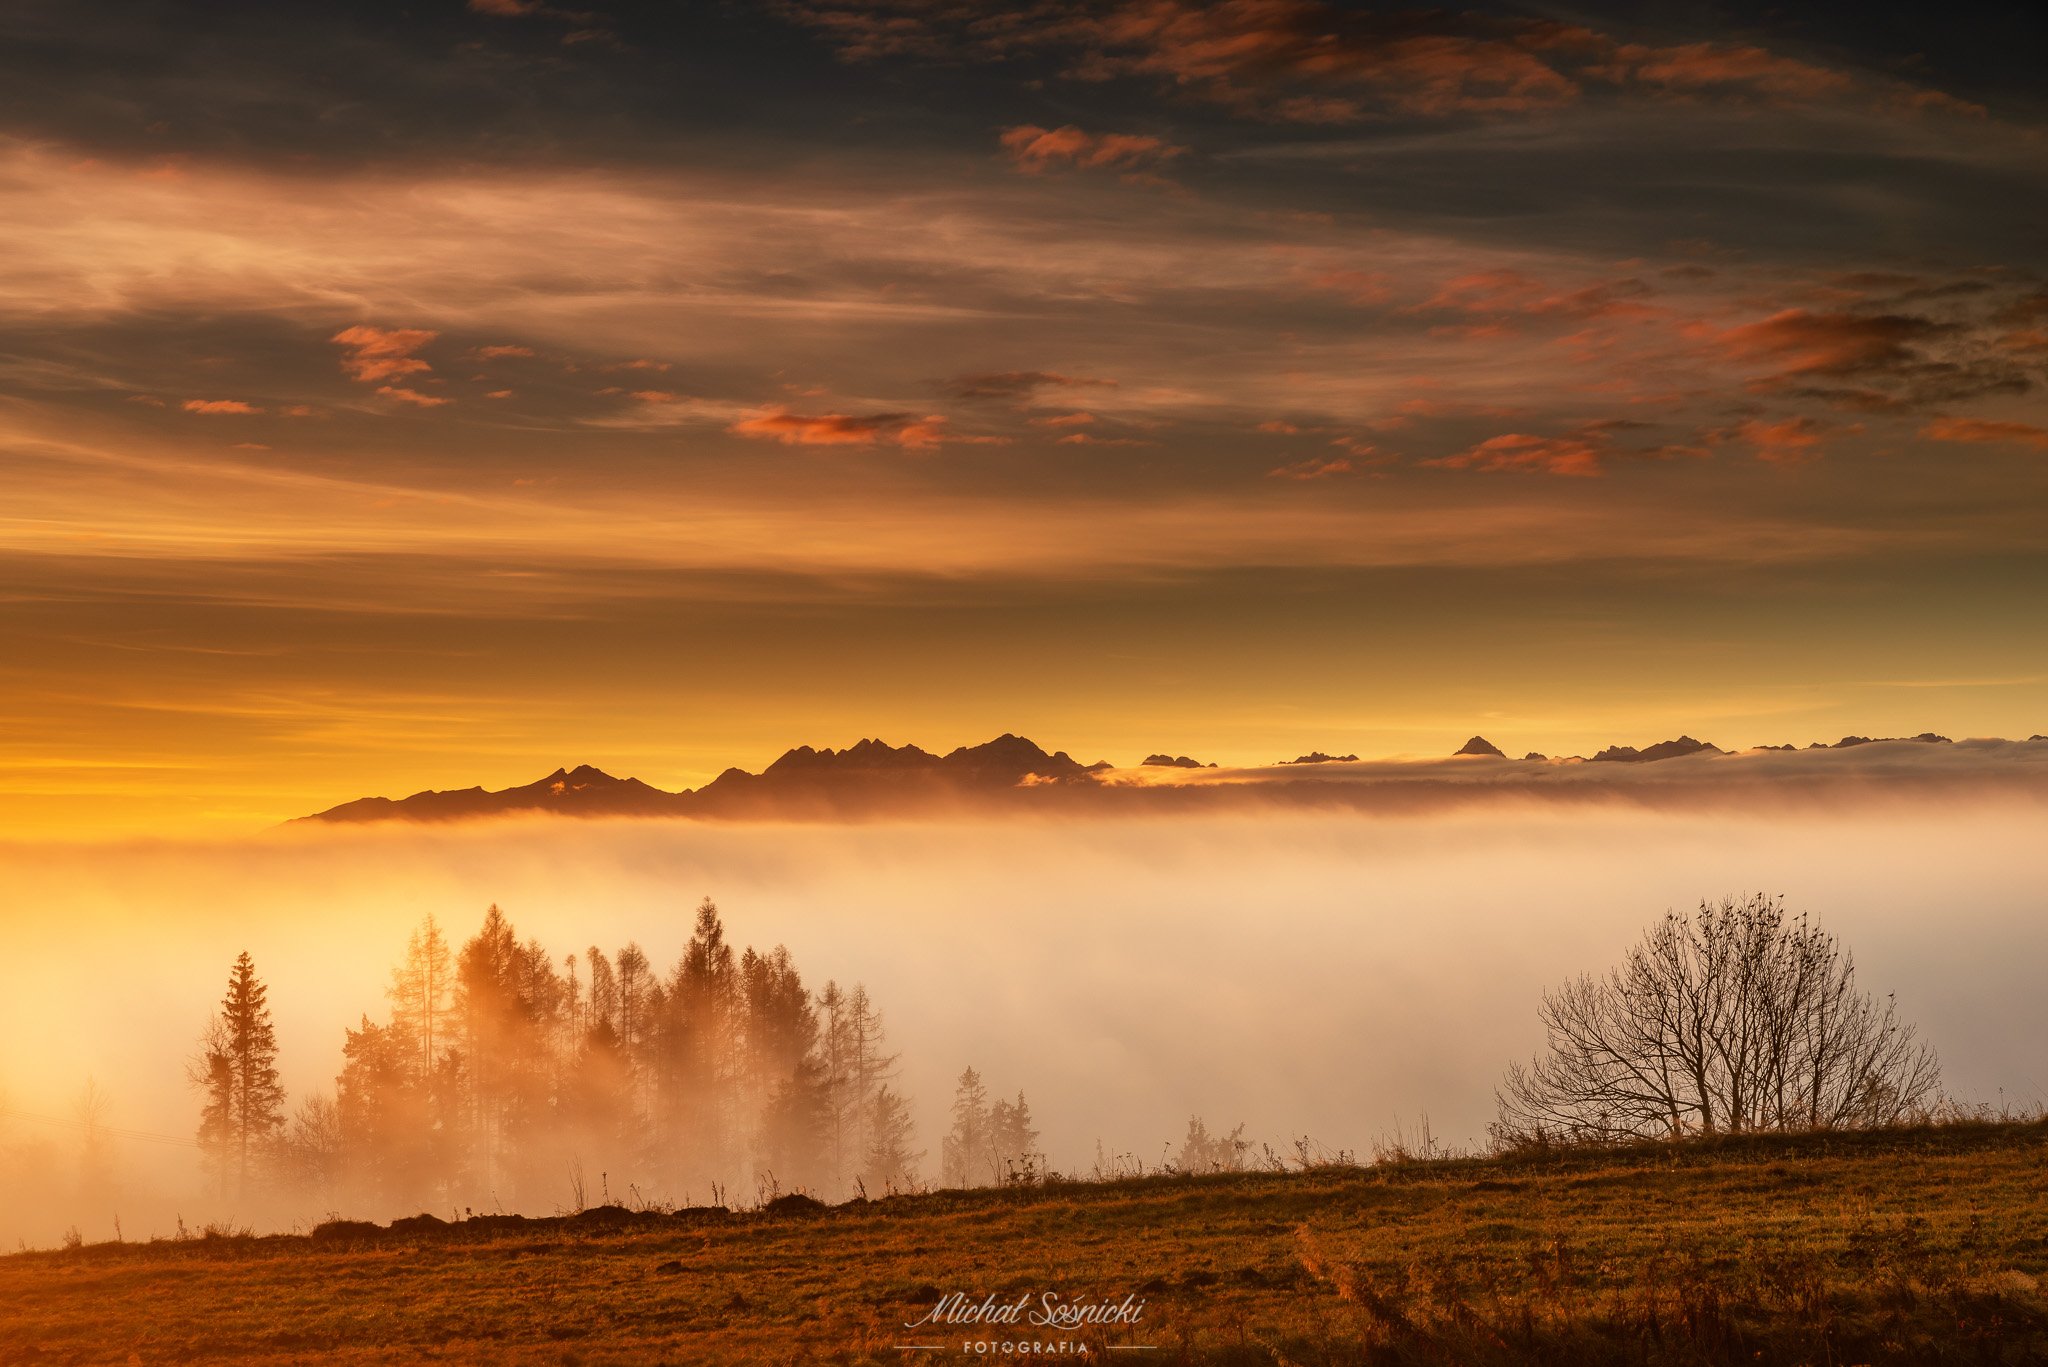 #autumn #poland #mountains #foggy #pentax #benro #benq #tatras, Michał Sośnicki